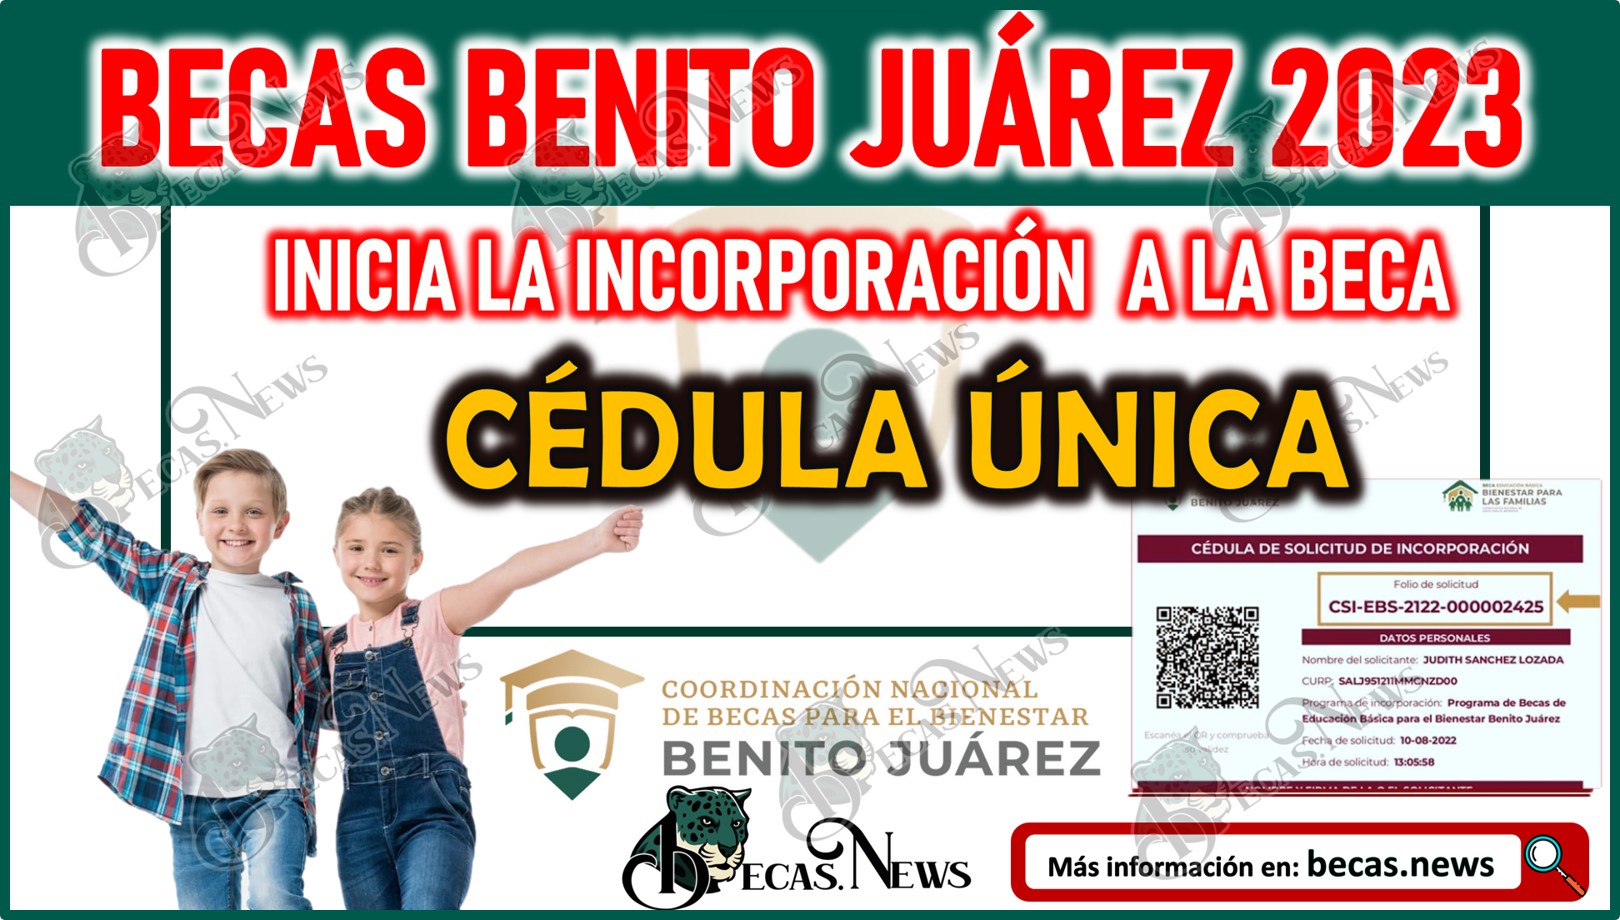 Becas Benito Juárez: Educación Básica 2023 | Da Inicio el proceso de incorporación mediante la CÉDULA ÚNICA